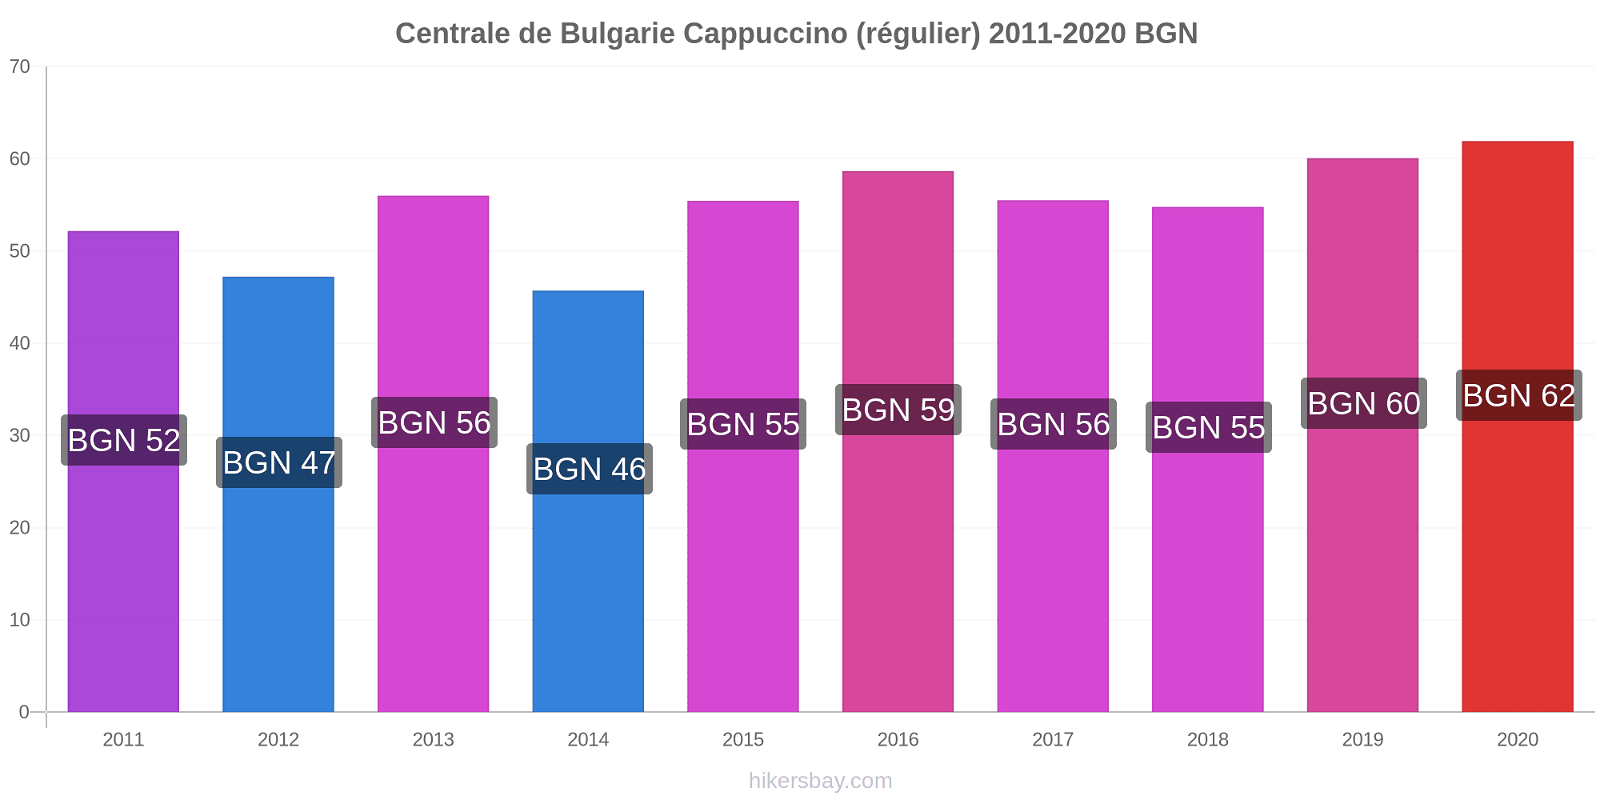 Centrale de Bulgarie changements de prix Cappuccino (régulier) hikersbay.com